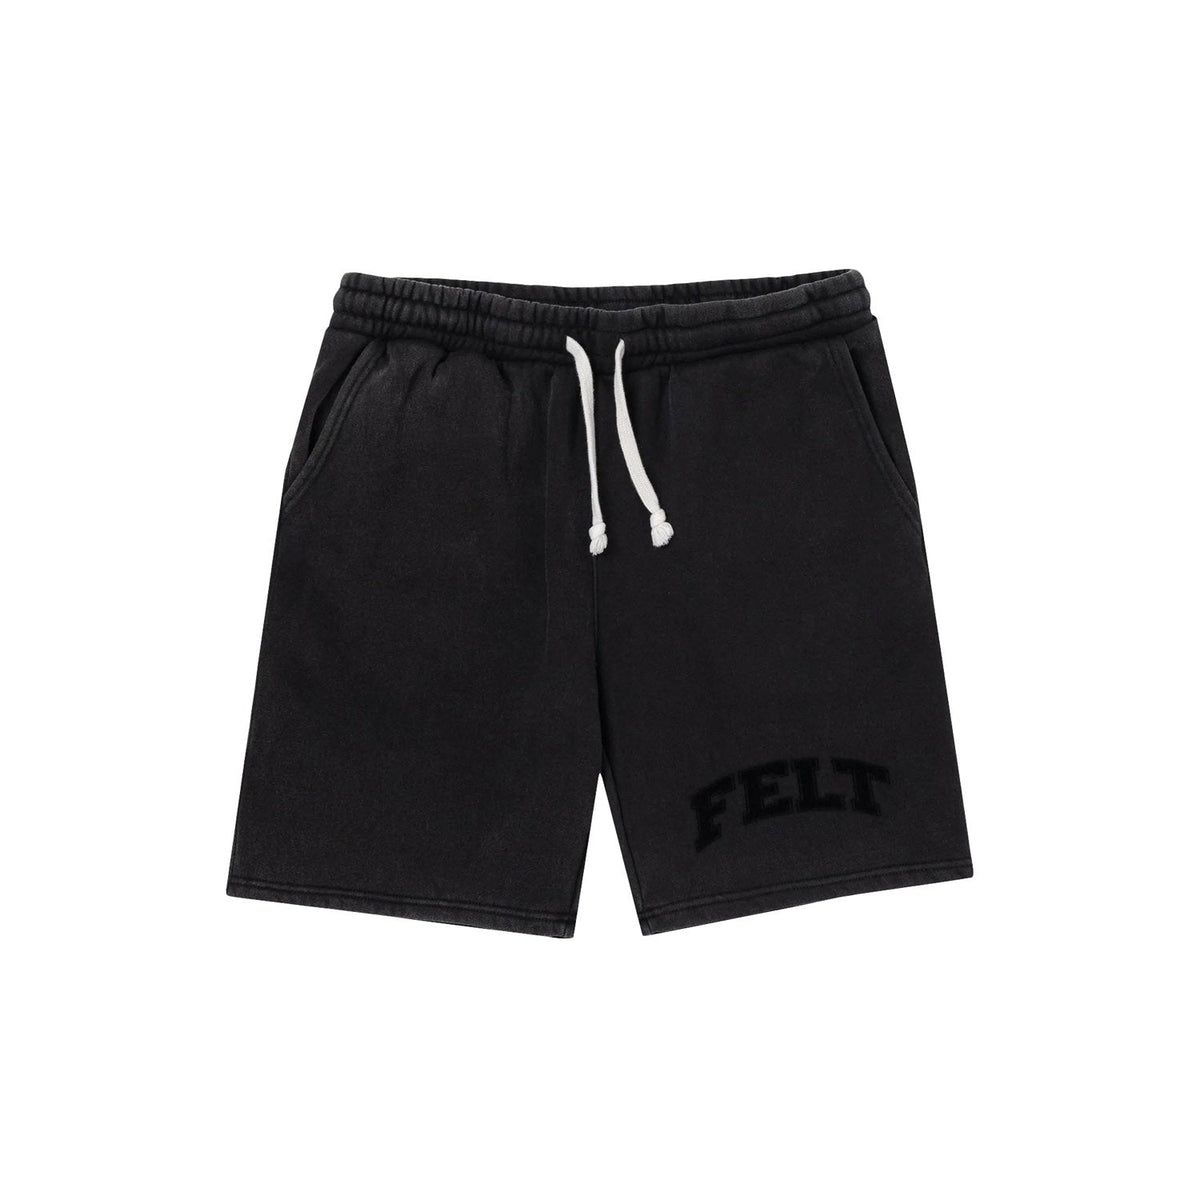 Felt Men Hampton Shorts Black - SHORTS - Canada